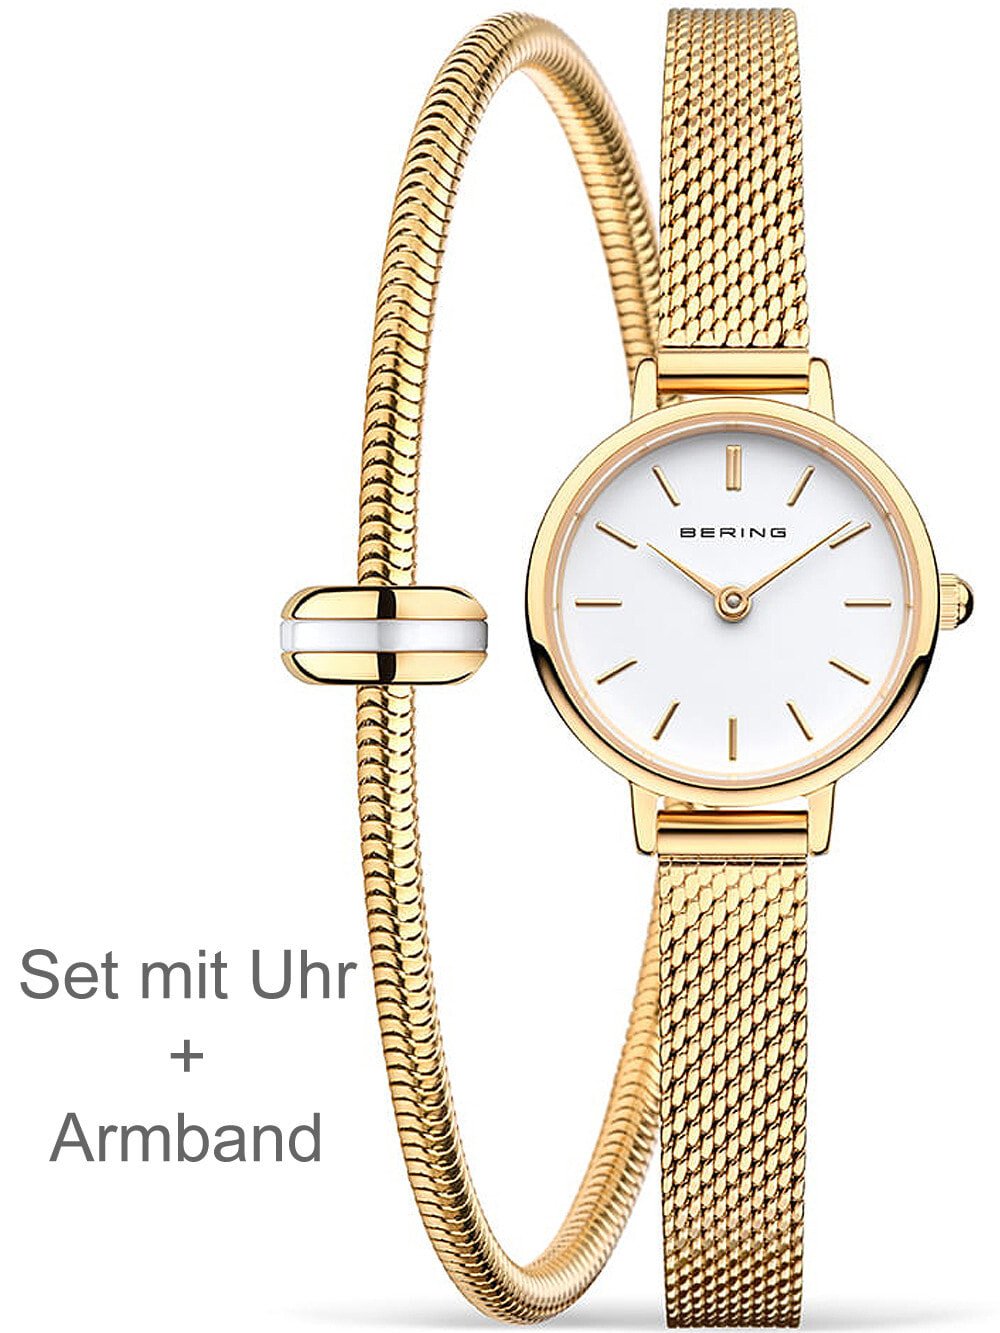 Женские наручные часы с золотым браслетом Bering 11022-334-Lovely-1 Classic ladies 22mm 3ATM